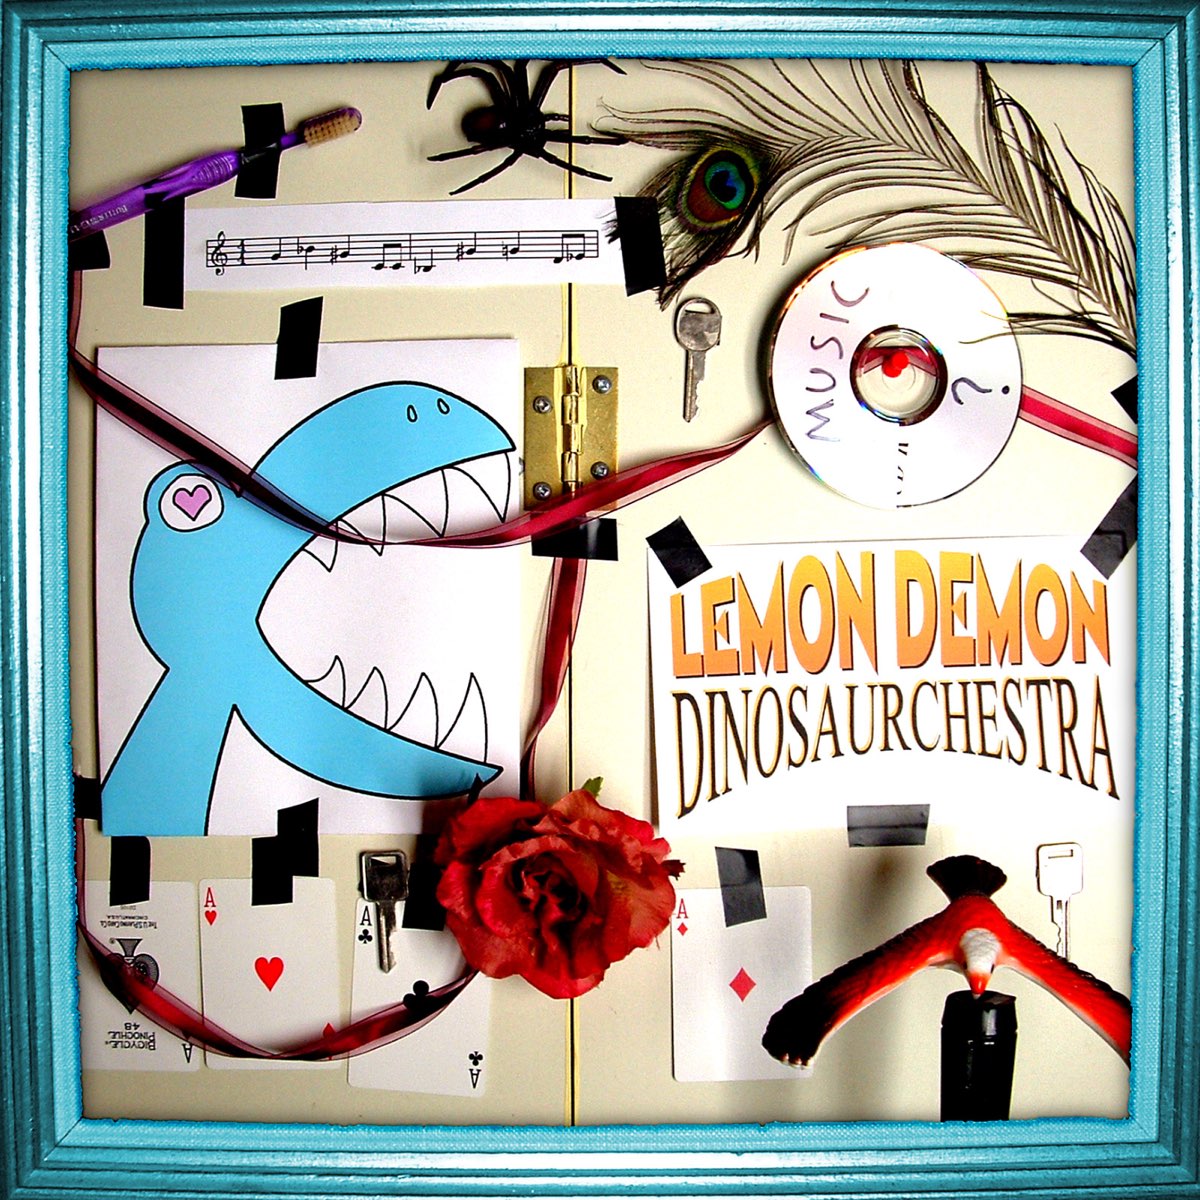 Fine lyrics lemon demon